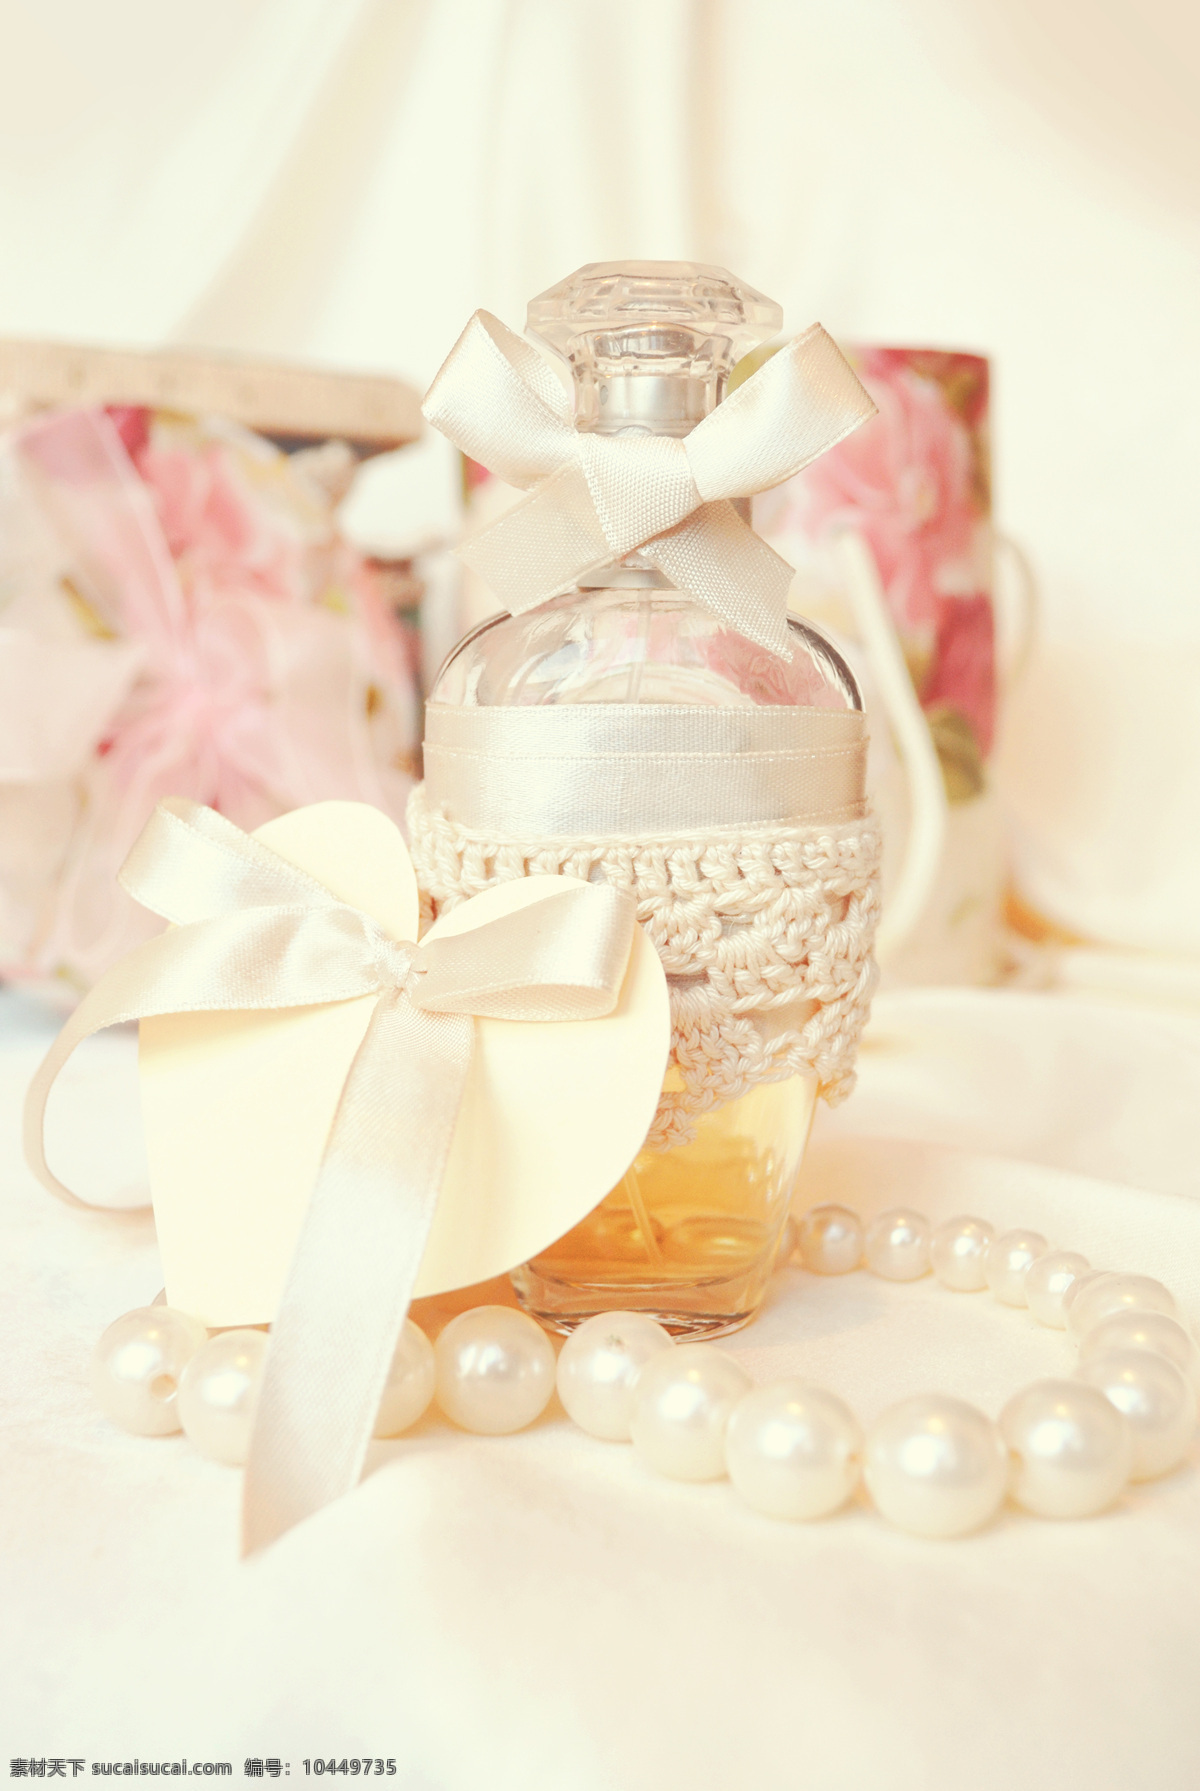 珍珠 项链 香水 高档香水 香水瓶 日用品 生活用品 生活百科